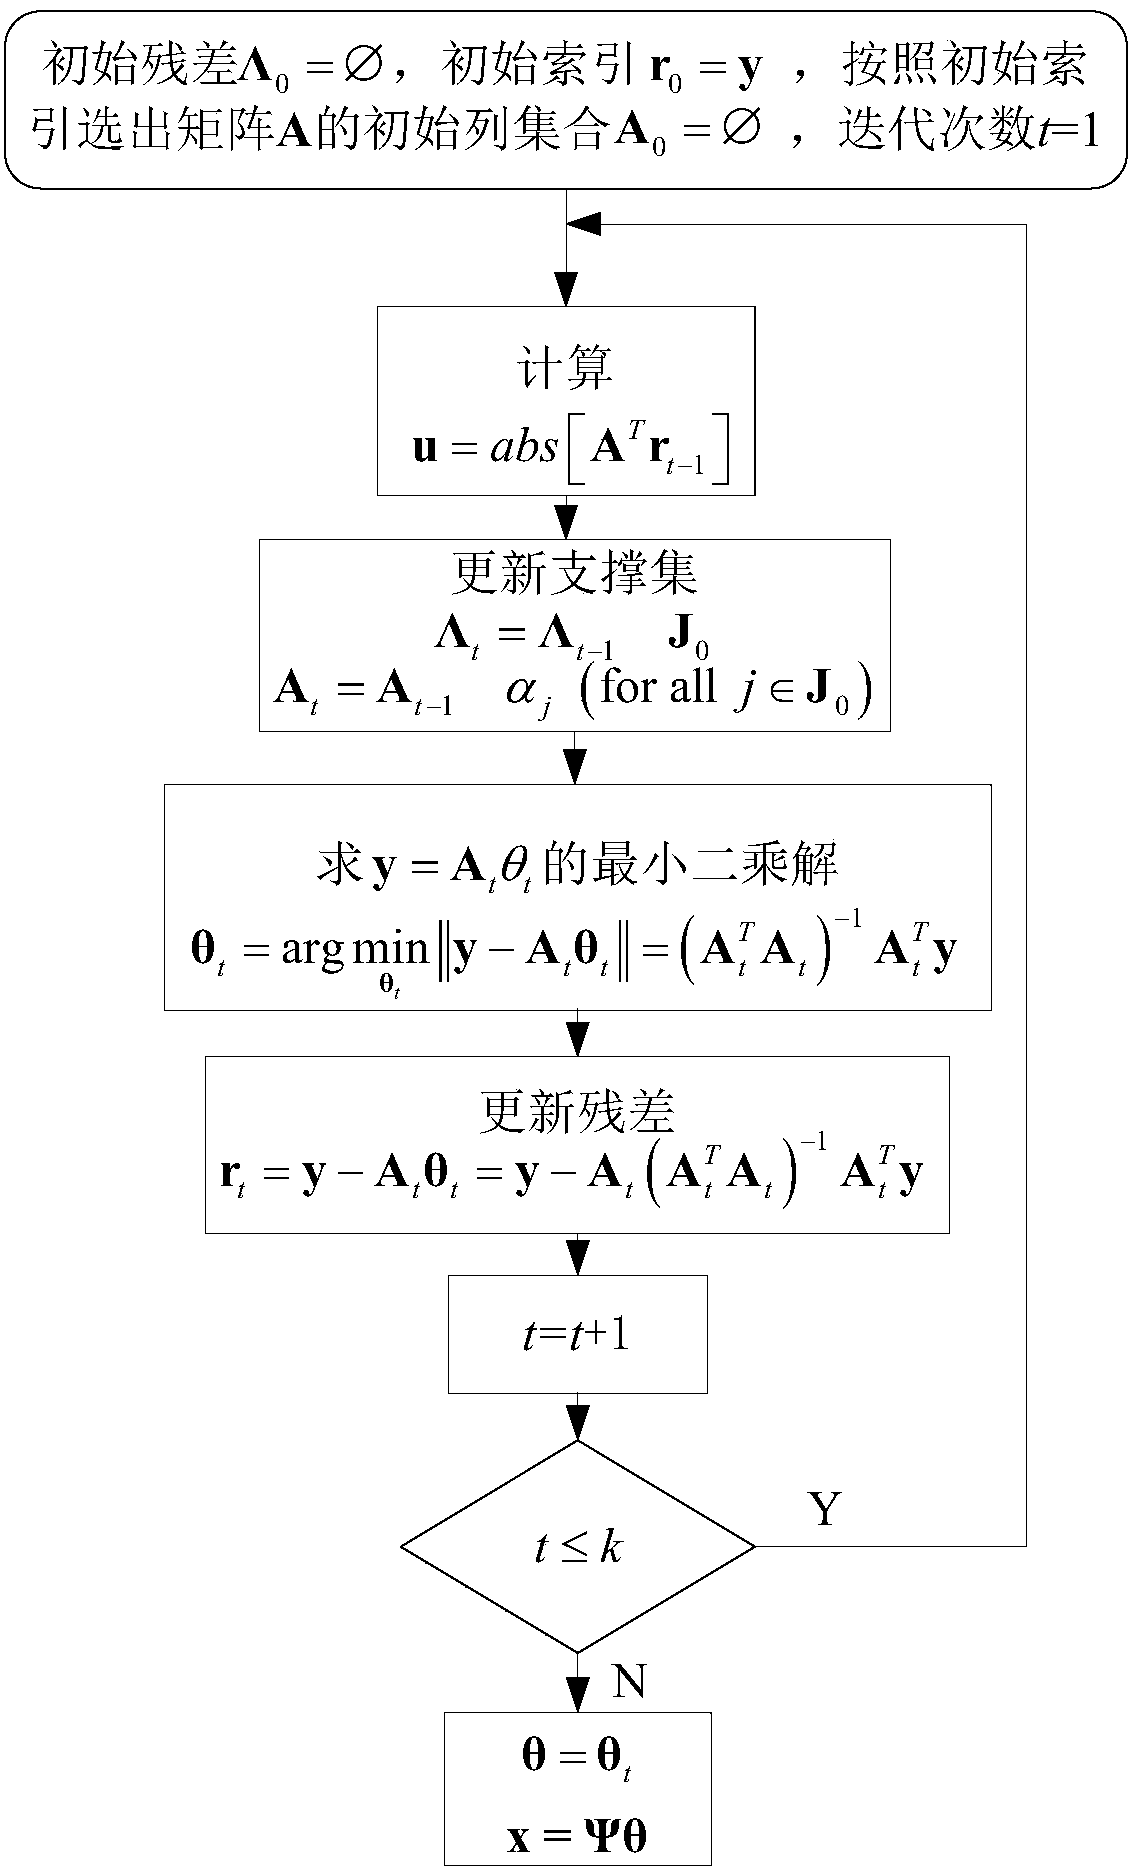 Sparse OFDM channel estimation method based on generalized orthogonal matching tracking algorithm